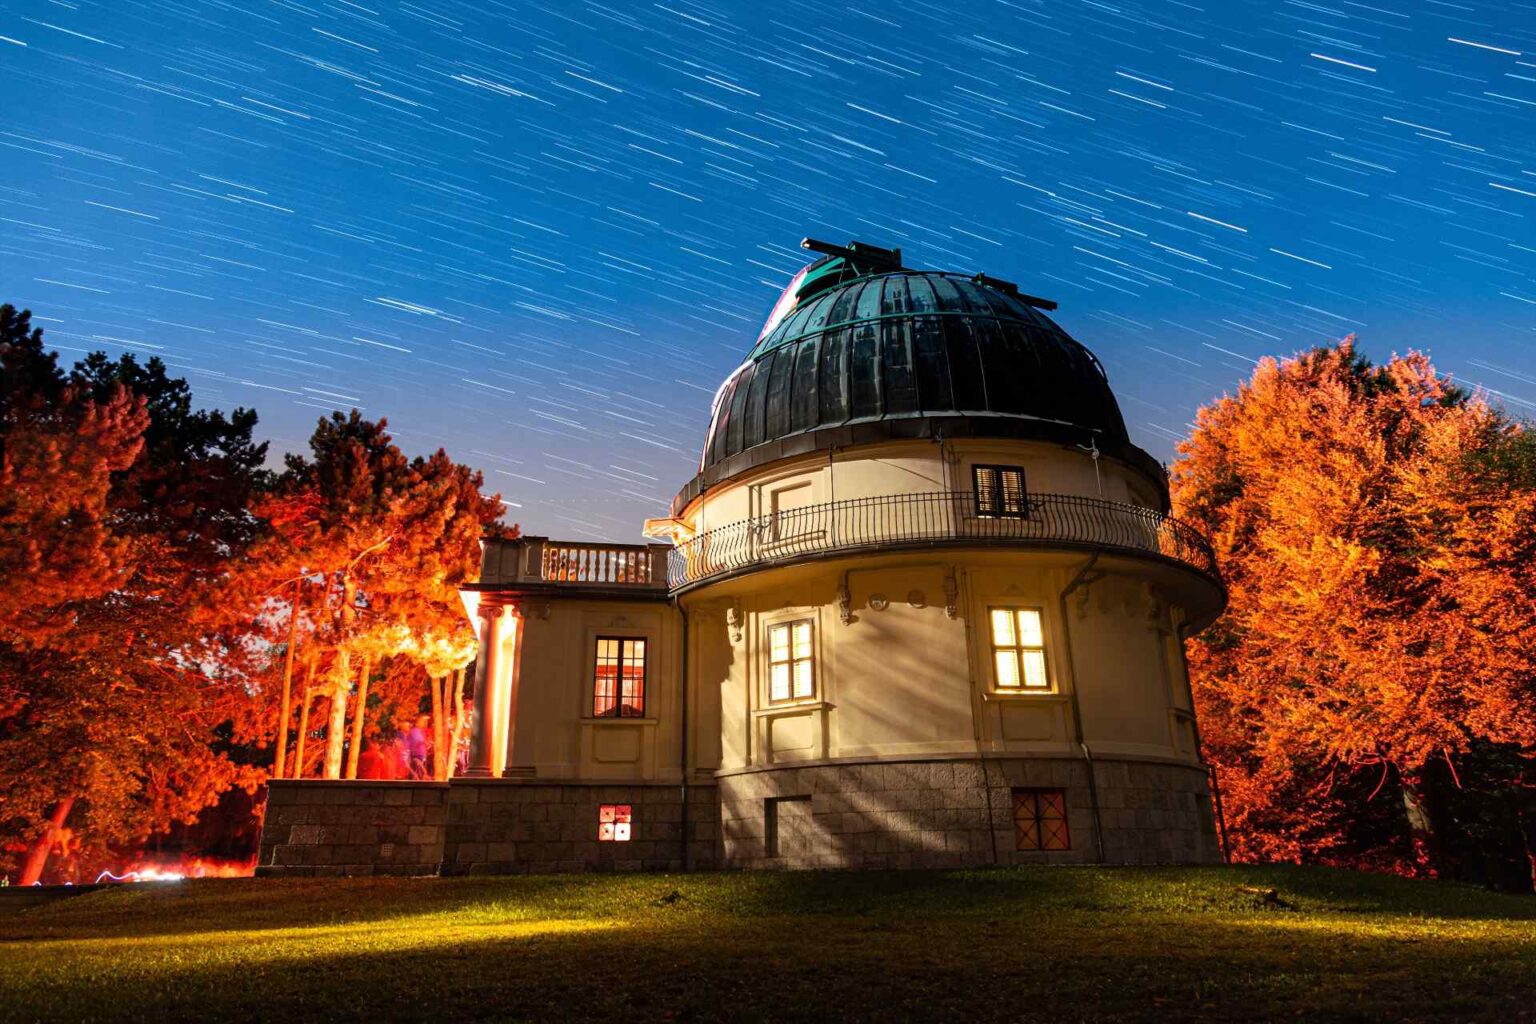 Halloweeni est és részleges holdfogyatkozás a Svábhegyi Csillagvizsgálóban